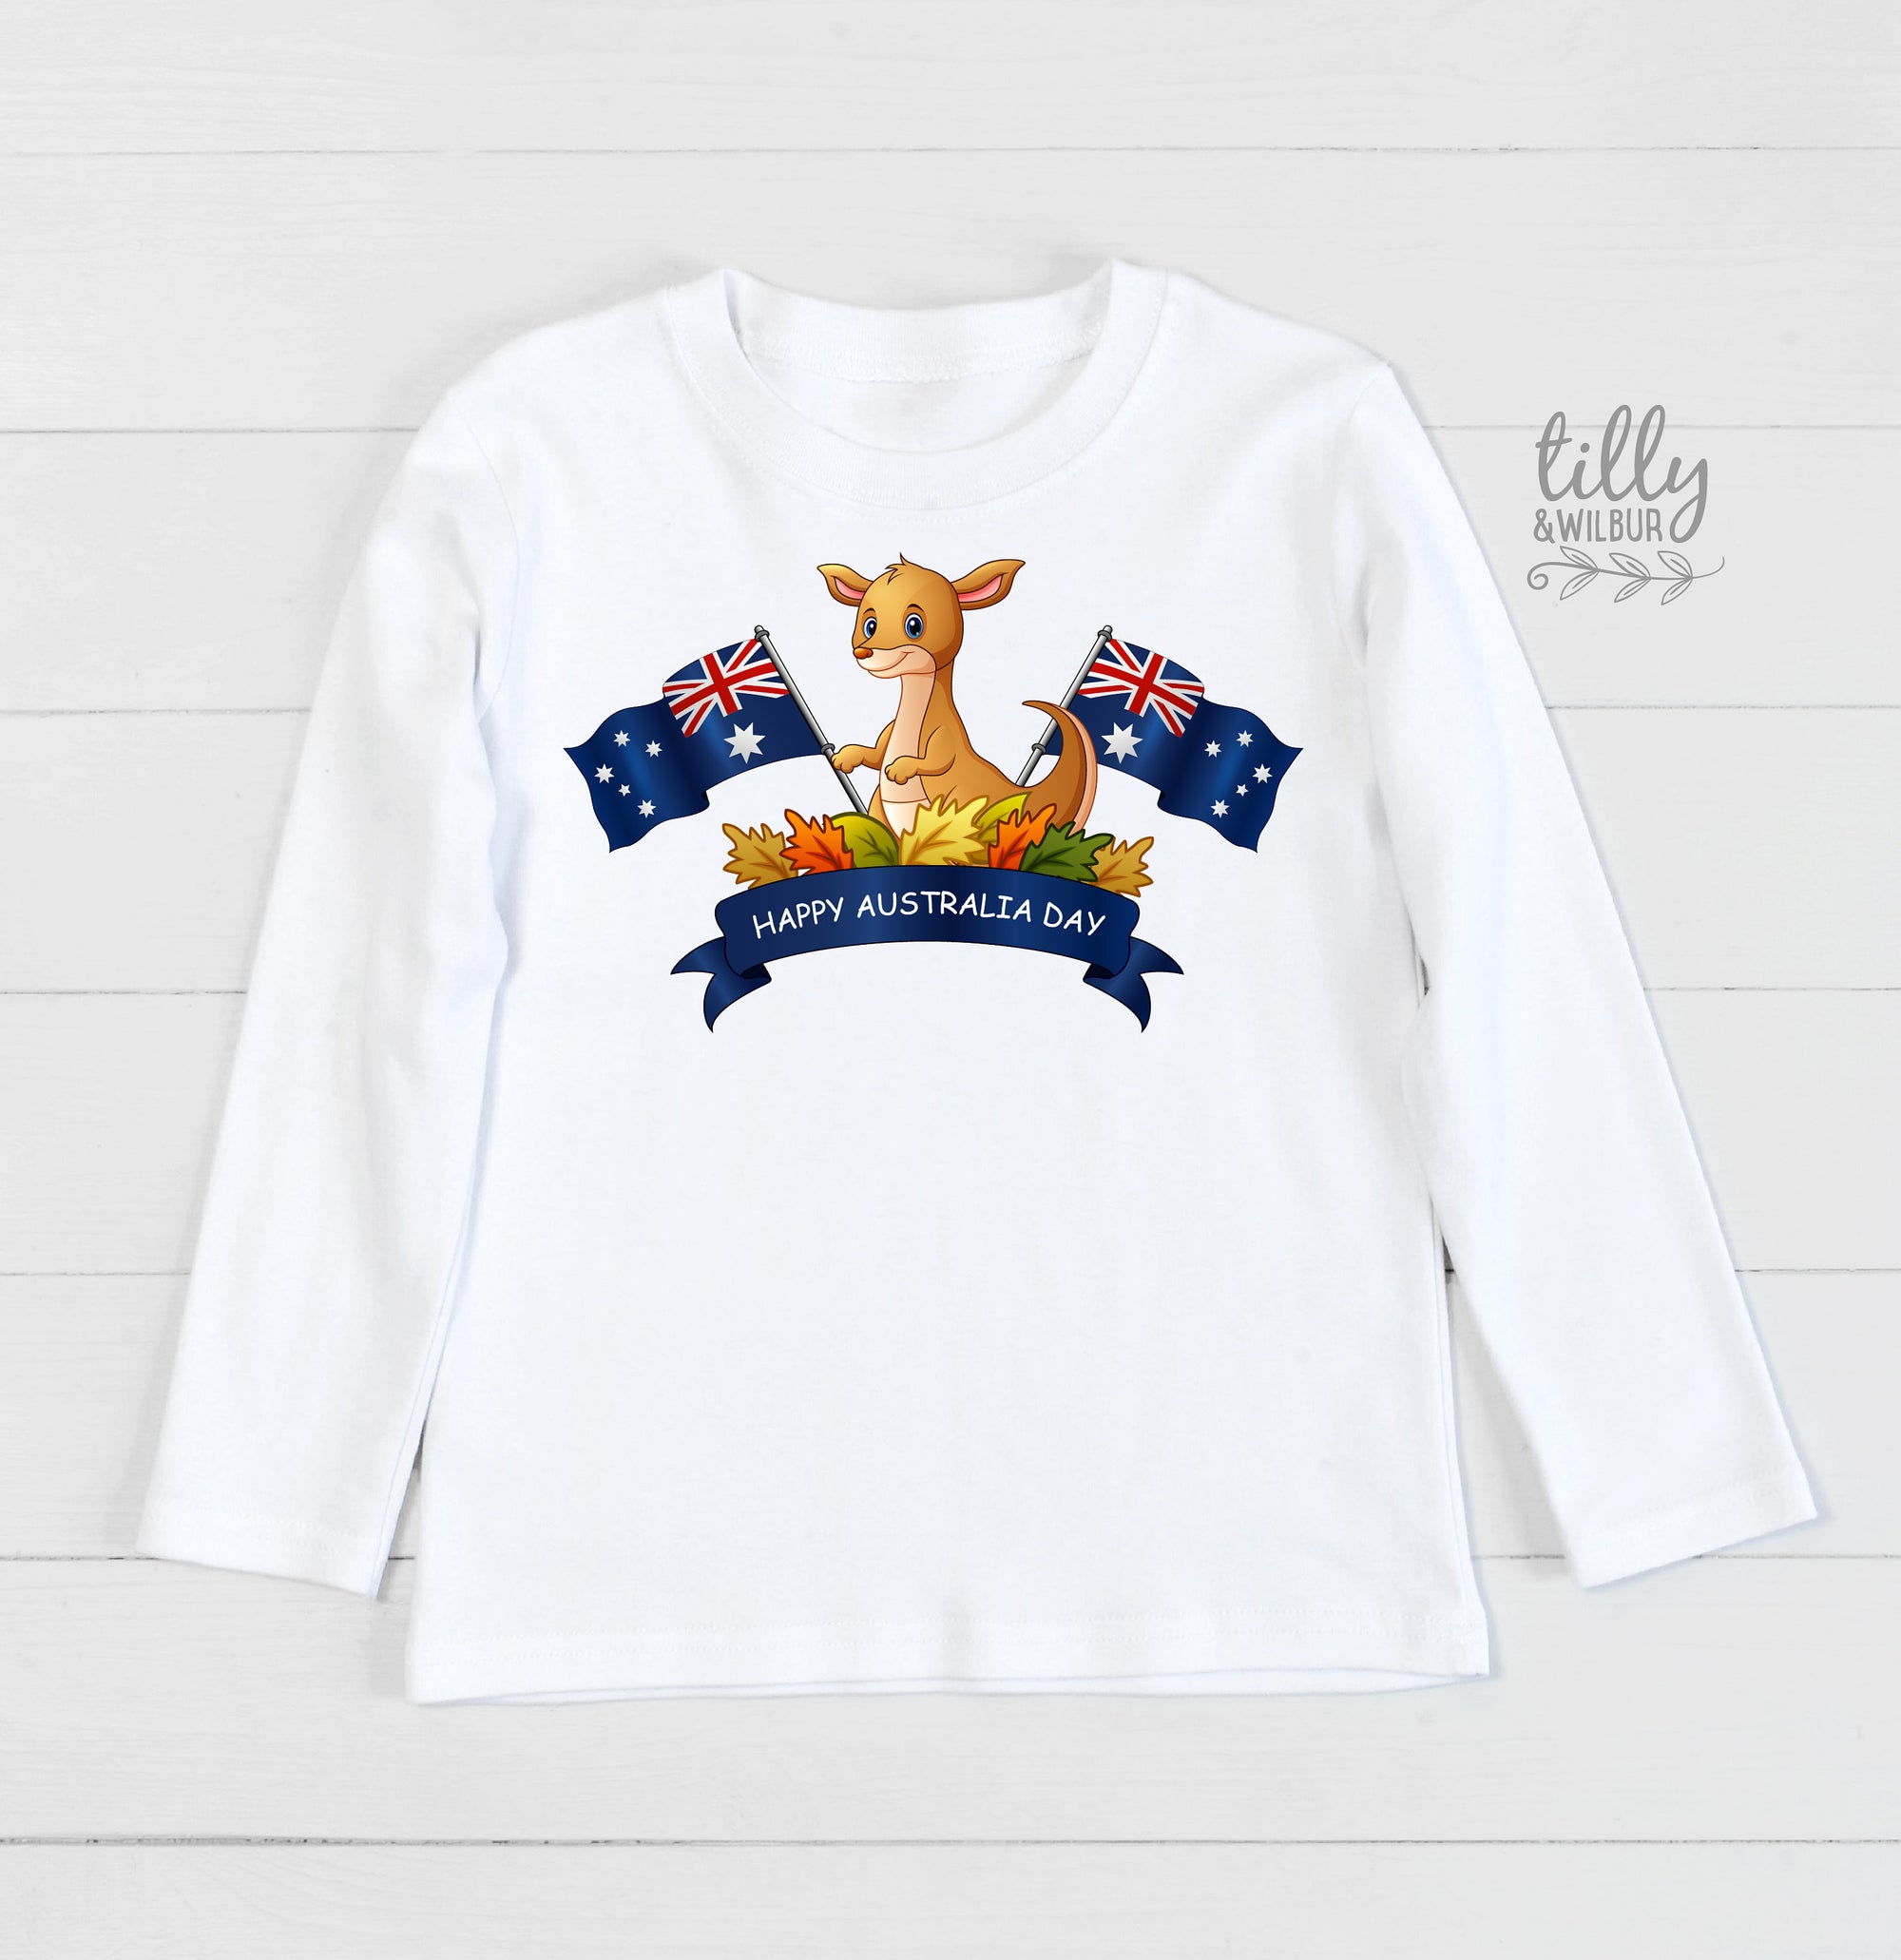 Happy Australia Day Kids T-Shirt, Australia Day T-Shirt, Aussie Aussie Aussie, Australia Day Kids Tee, Kids Australia Day Gift, Aussie Shirt